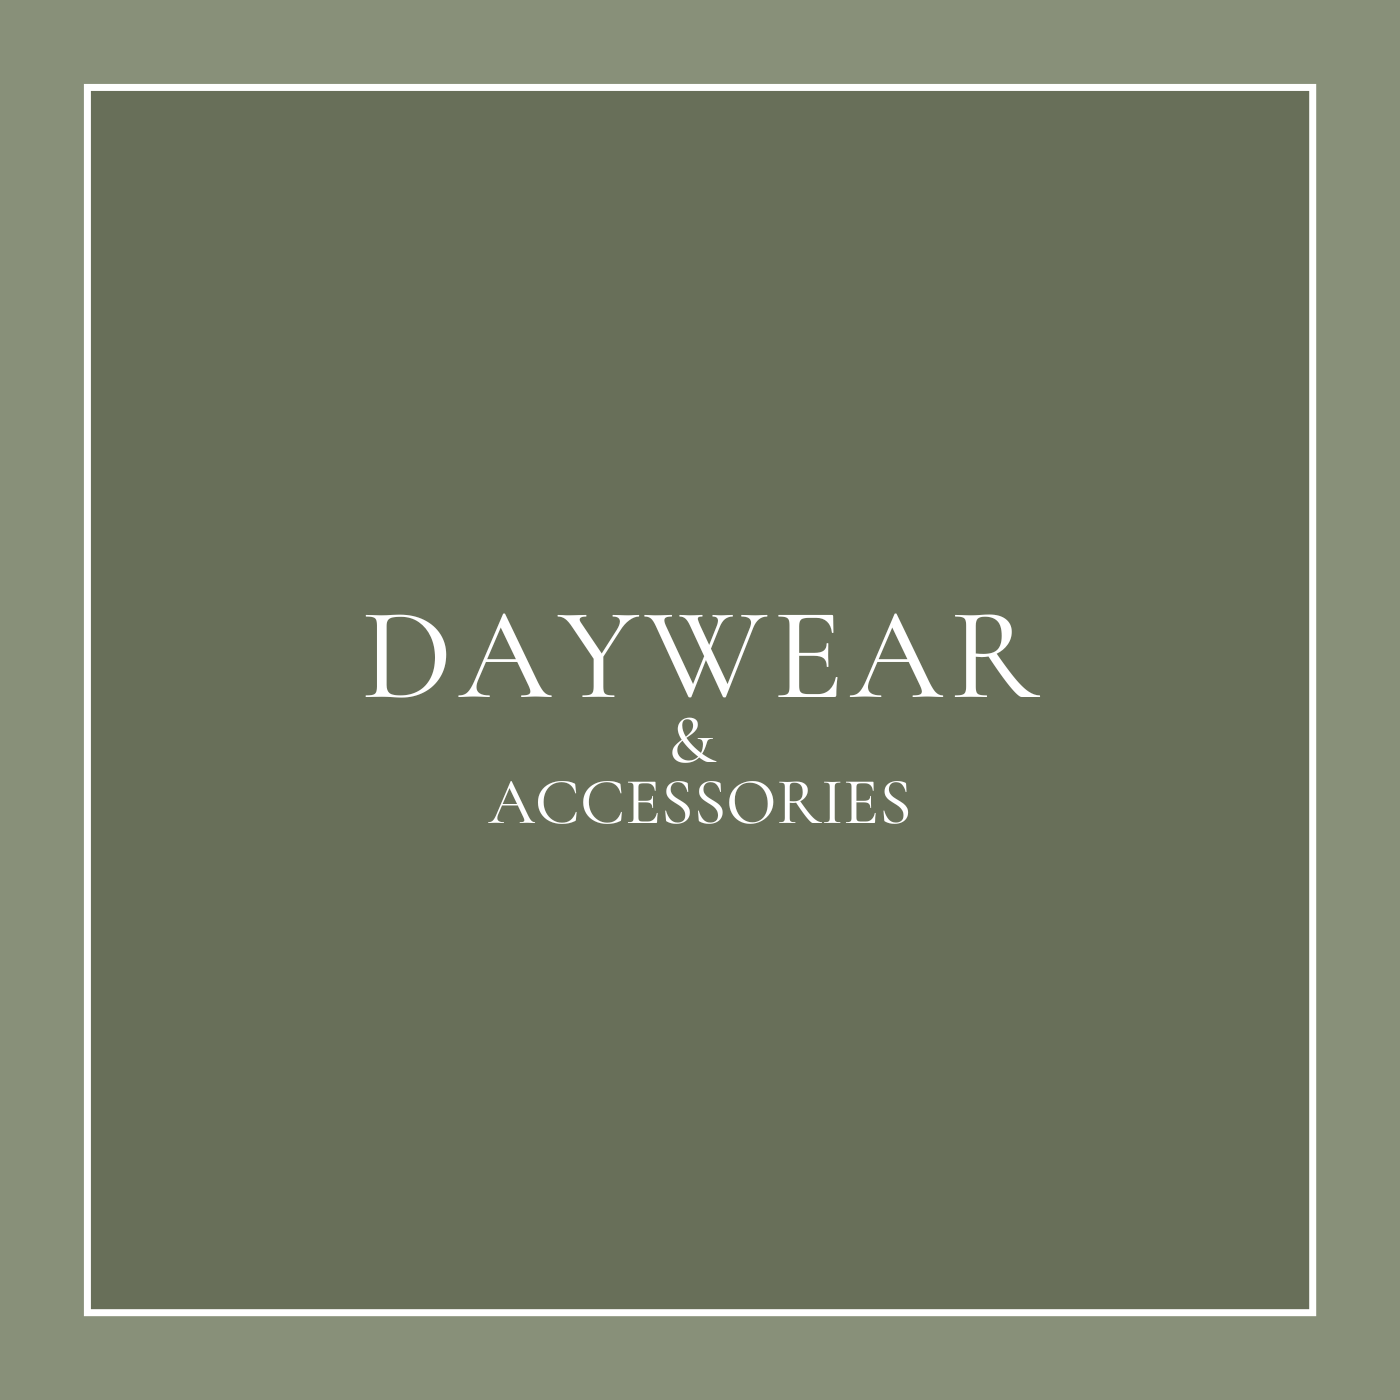 Daywear & Accessories